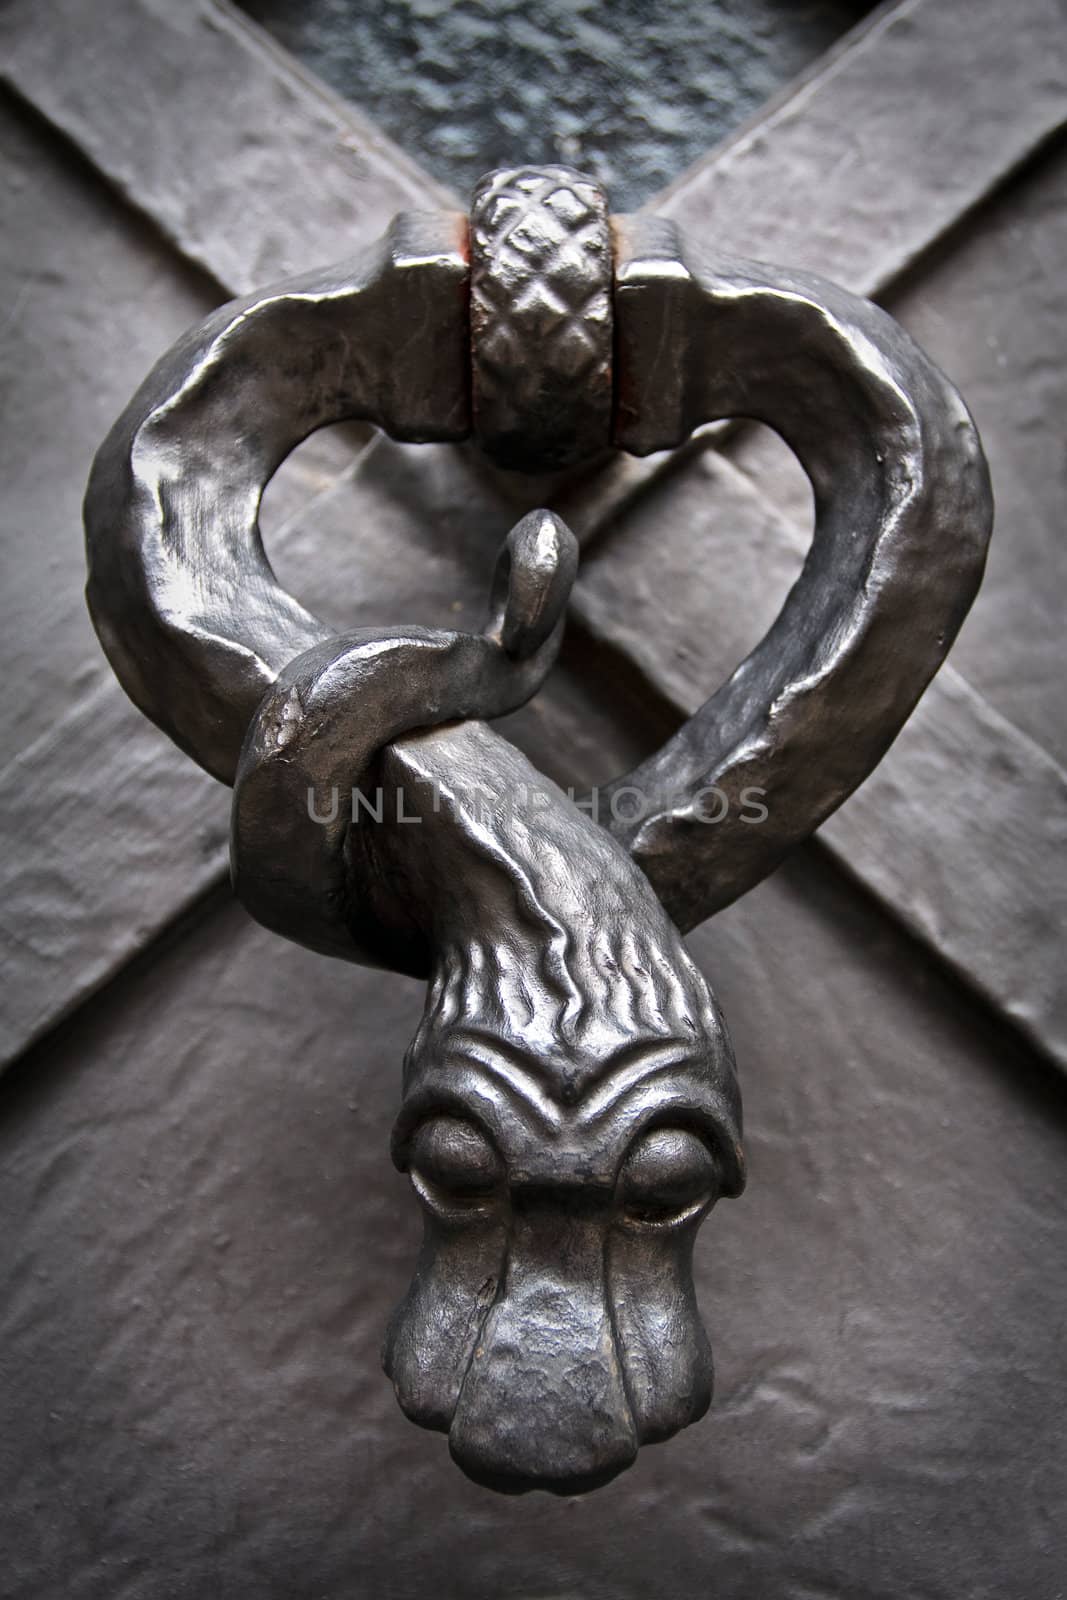 Snake knocker on the door in Prague Castle